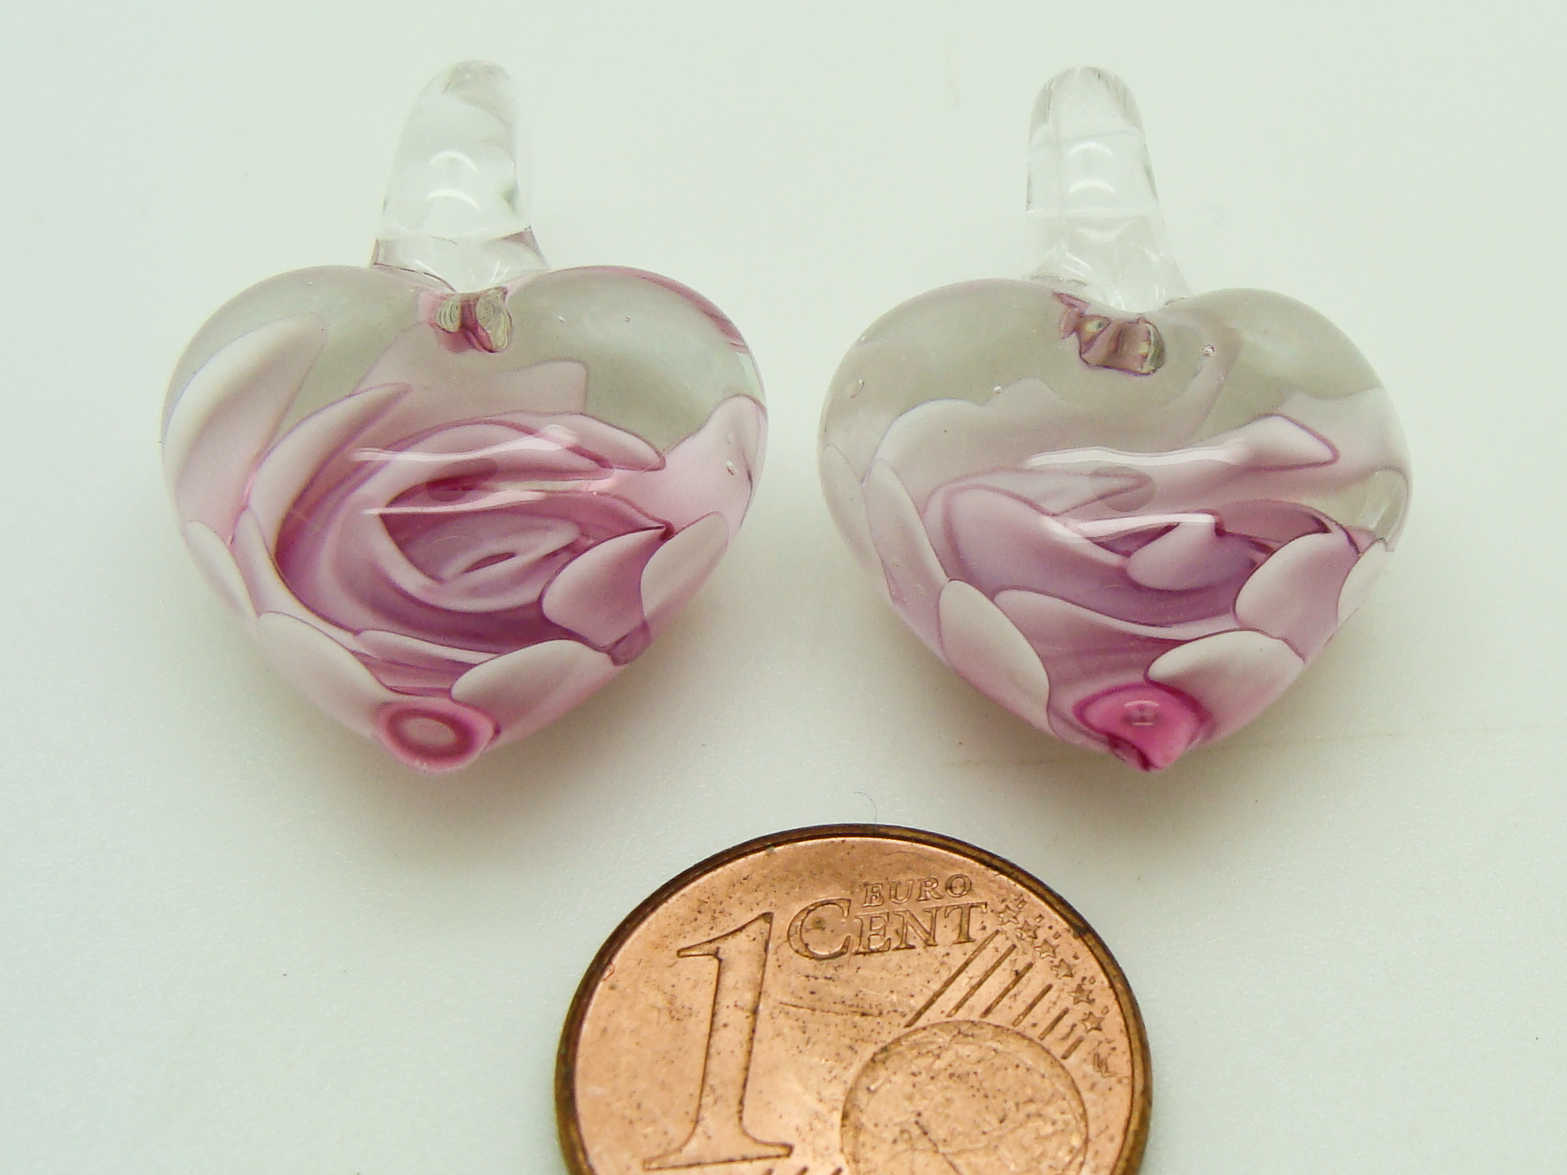 Pend-181-6 5 2 pendentifs coeur violet verre